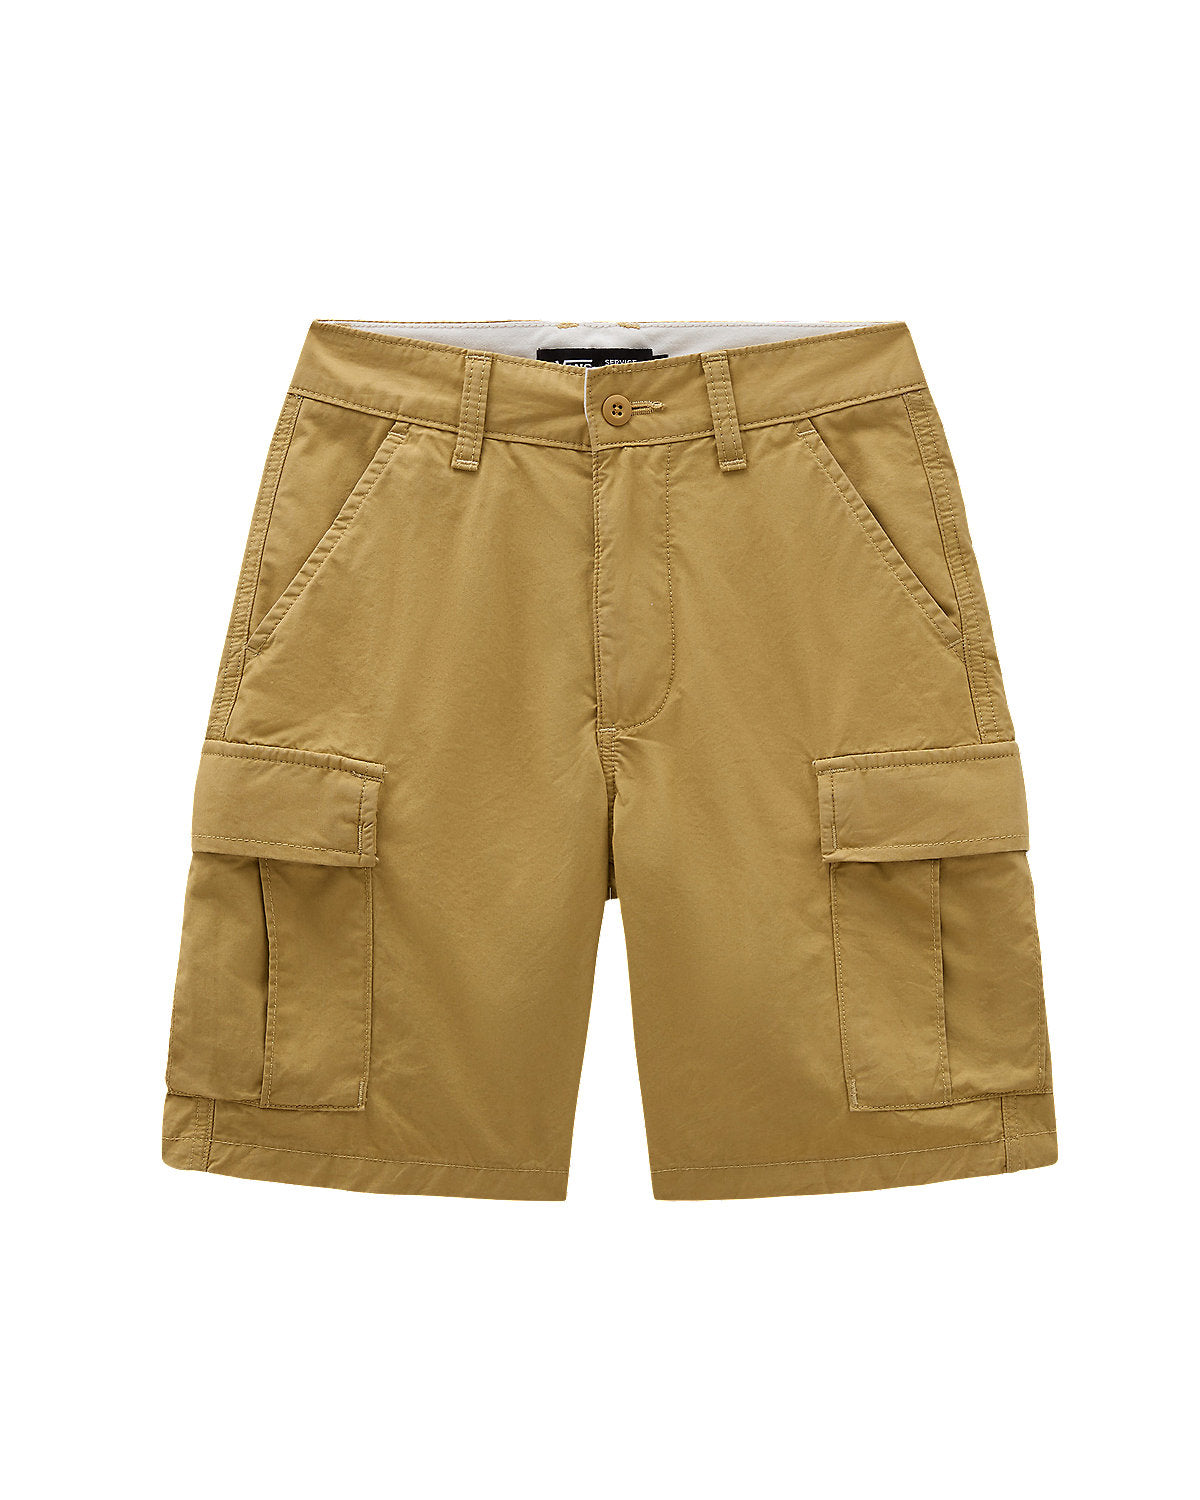 VANS Kids Service Cargo Shorts - Antelope Brown